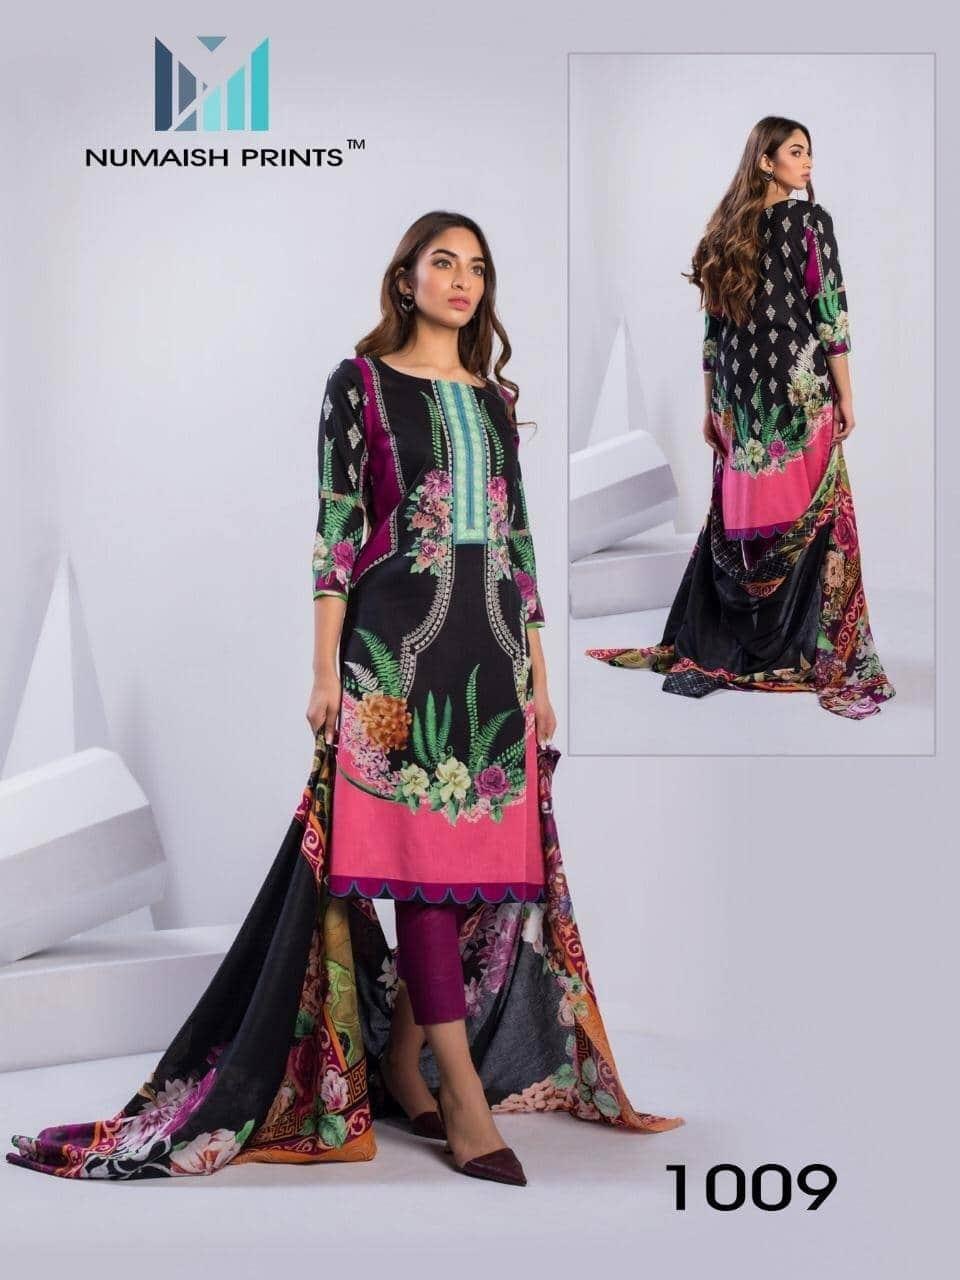 numaish prints mishaal primum printed lawn cotton collection 2020  salwar suit catalog